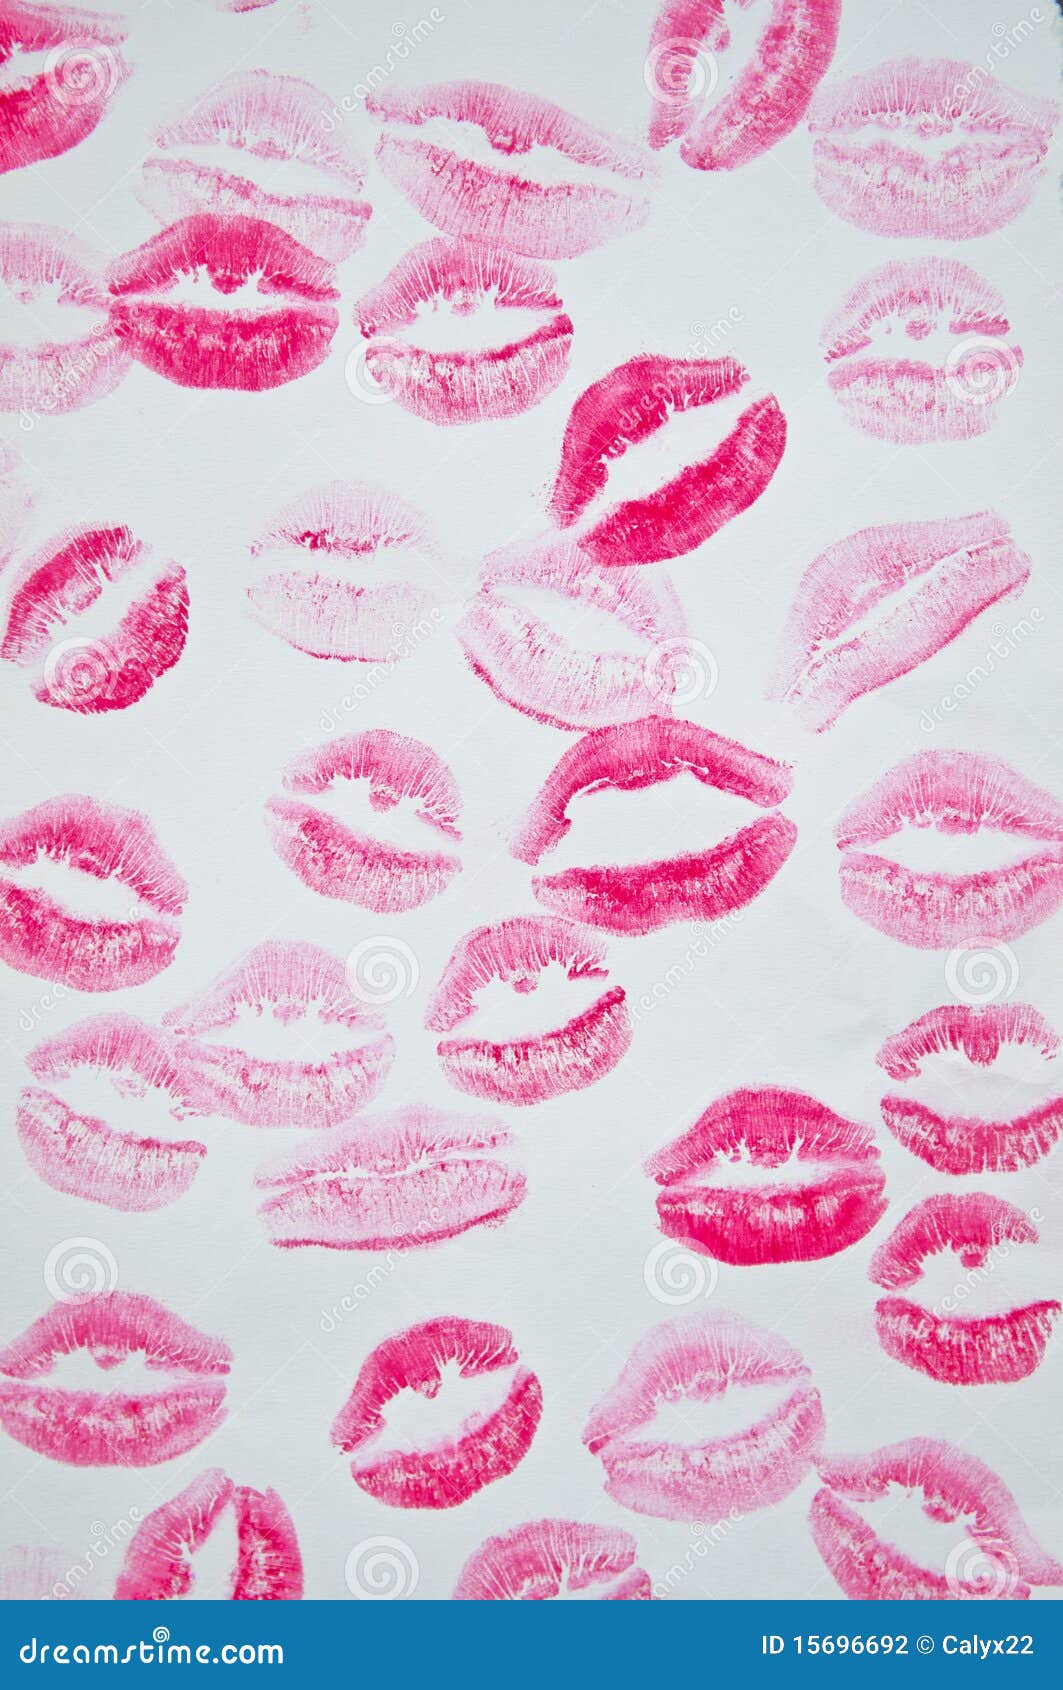 Discover 77+ lipstick kiss wallpaper super hot - 3tdesign.edu.vn